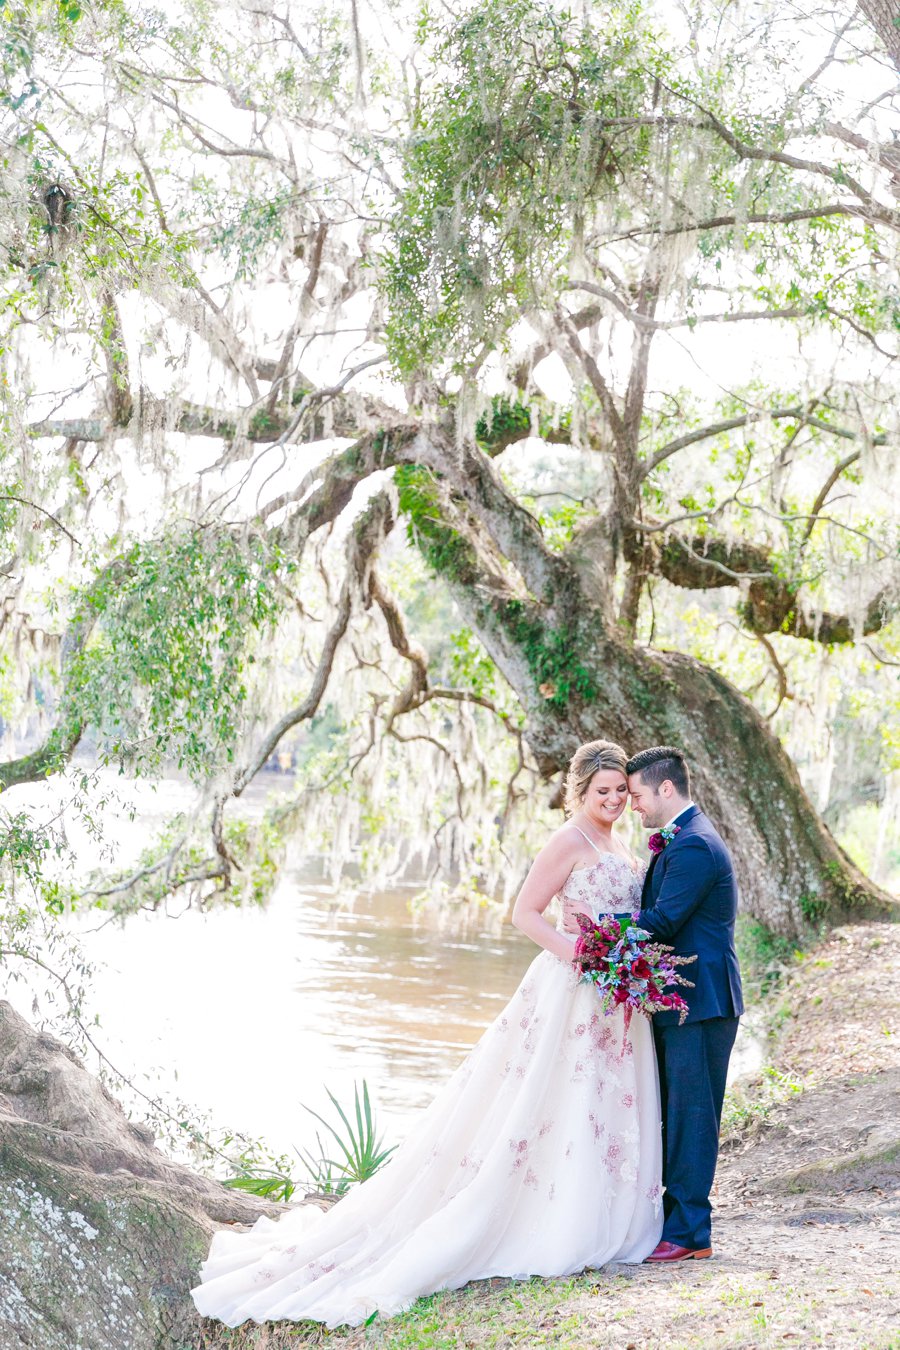 An Elegant Red & Blue Rustic South Carolina Wedding via TheELD.com